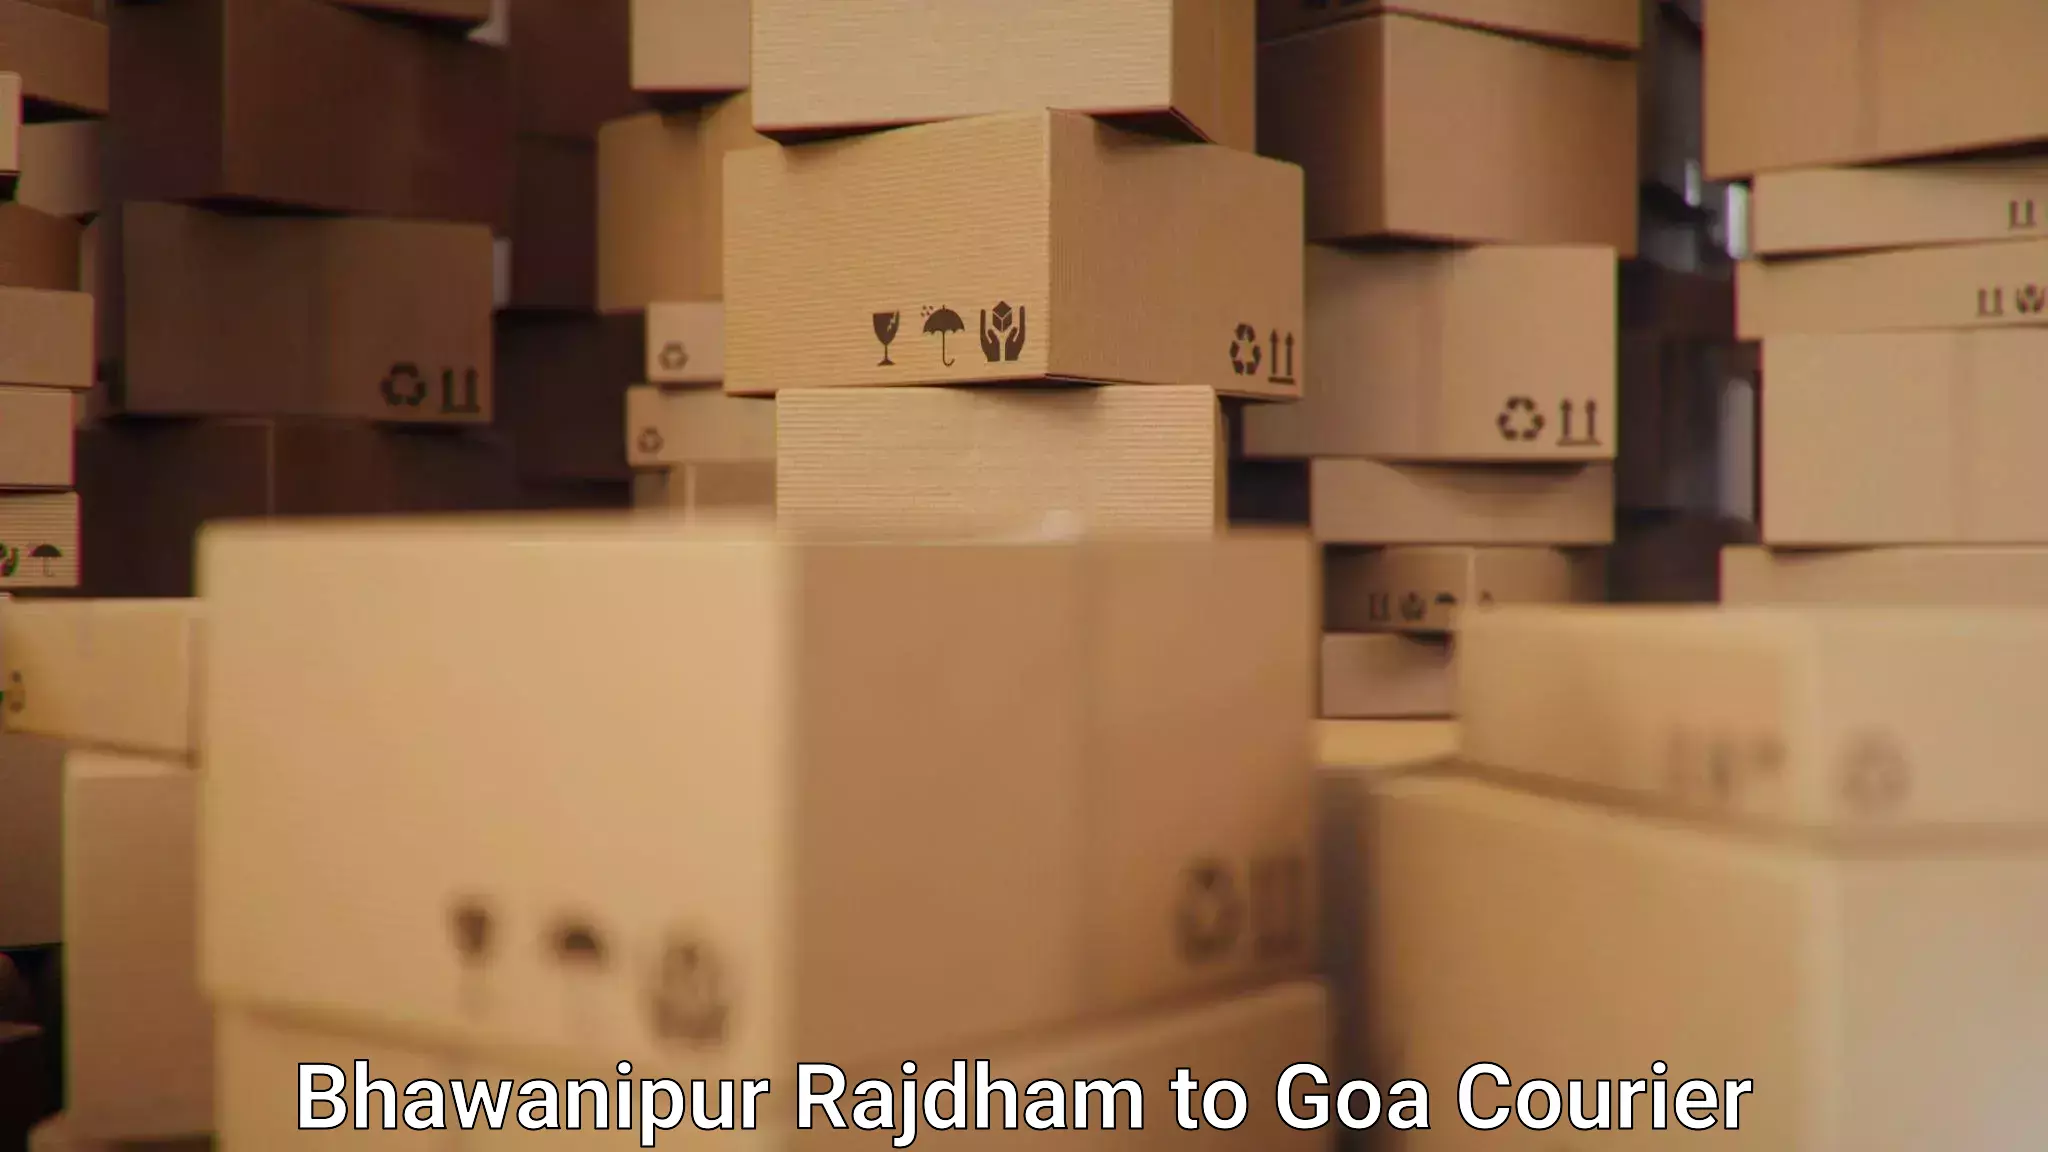 High-capacity parcel service Bhawanipur Rajdham to Vasco da Gama